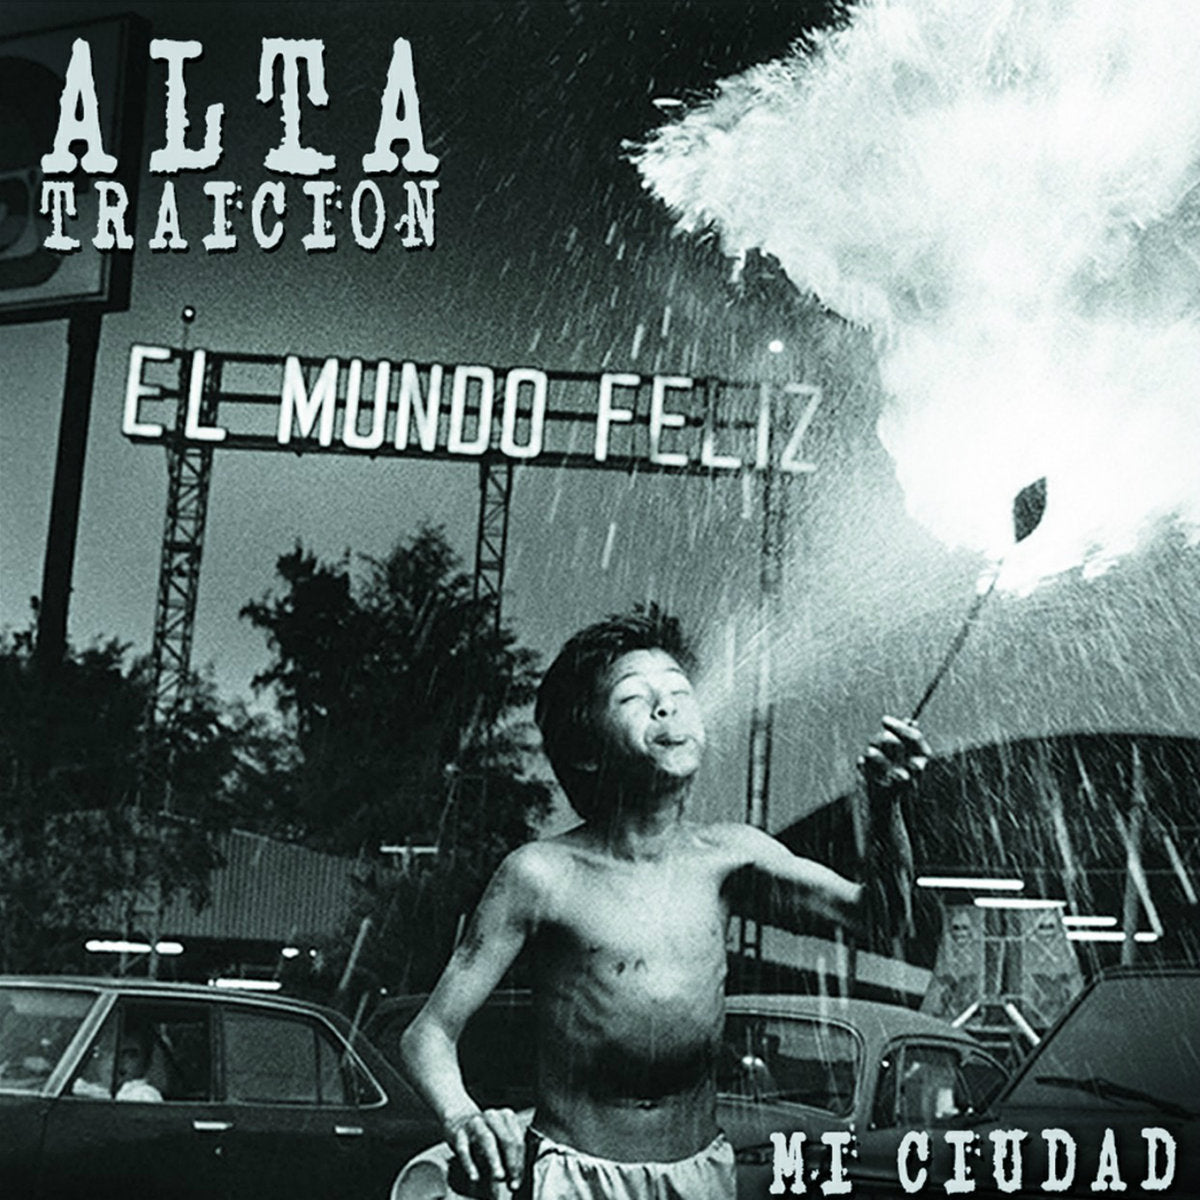 ALTA TRAICION - MI CIUDAD Vinyl LP